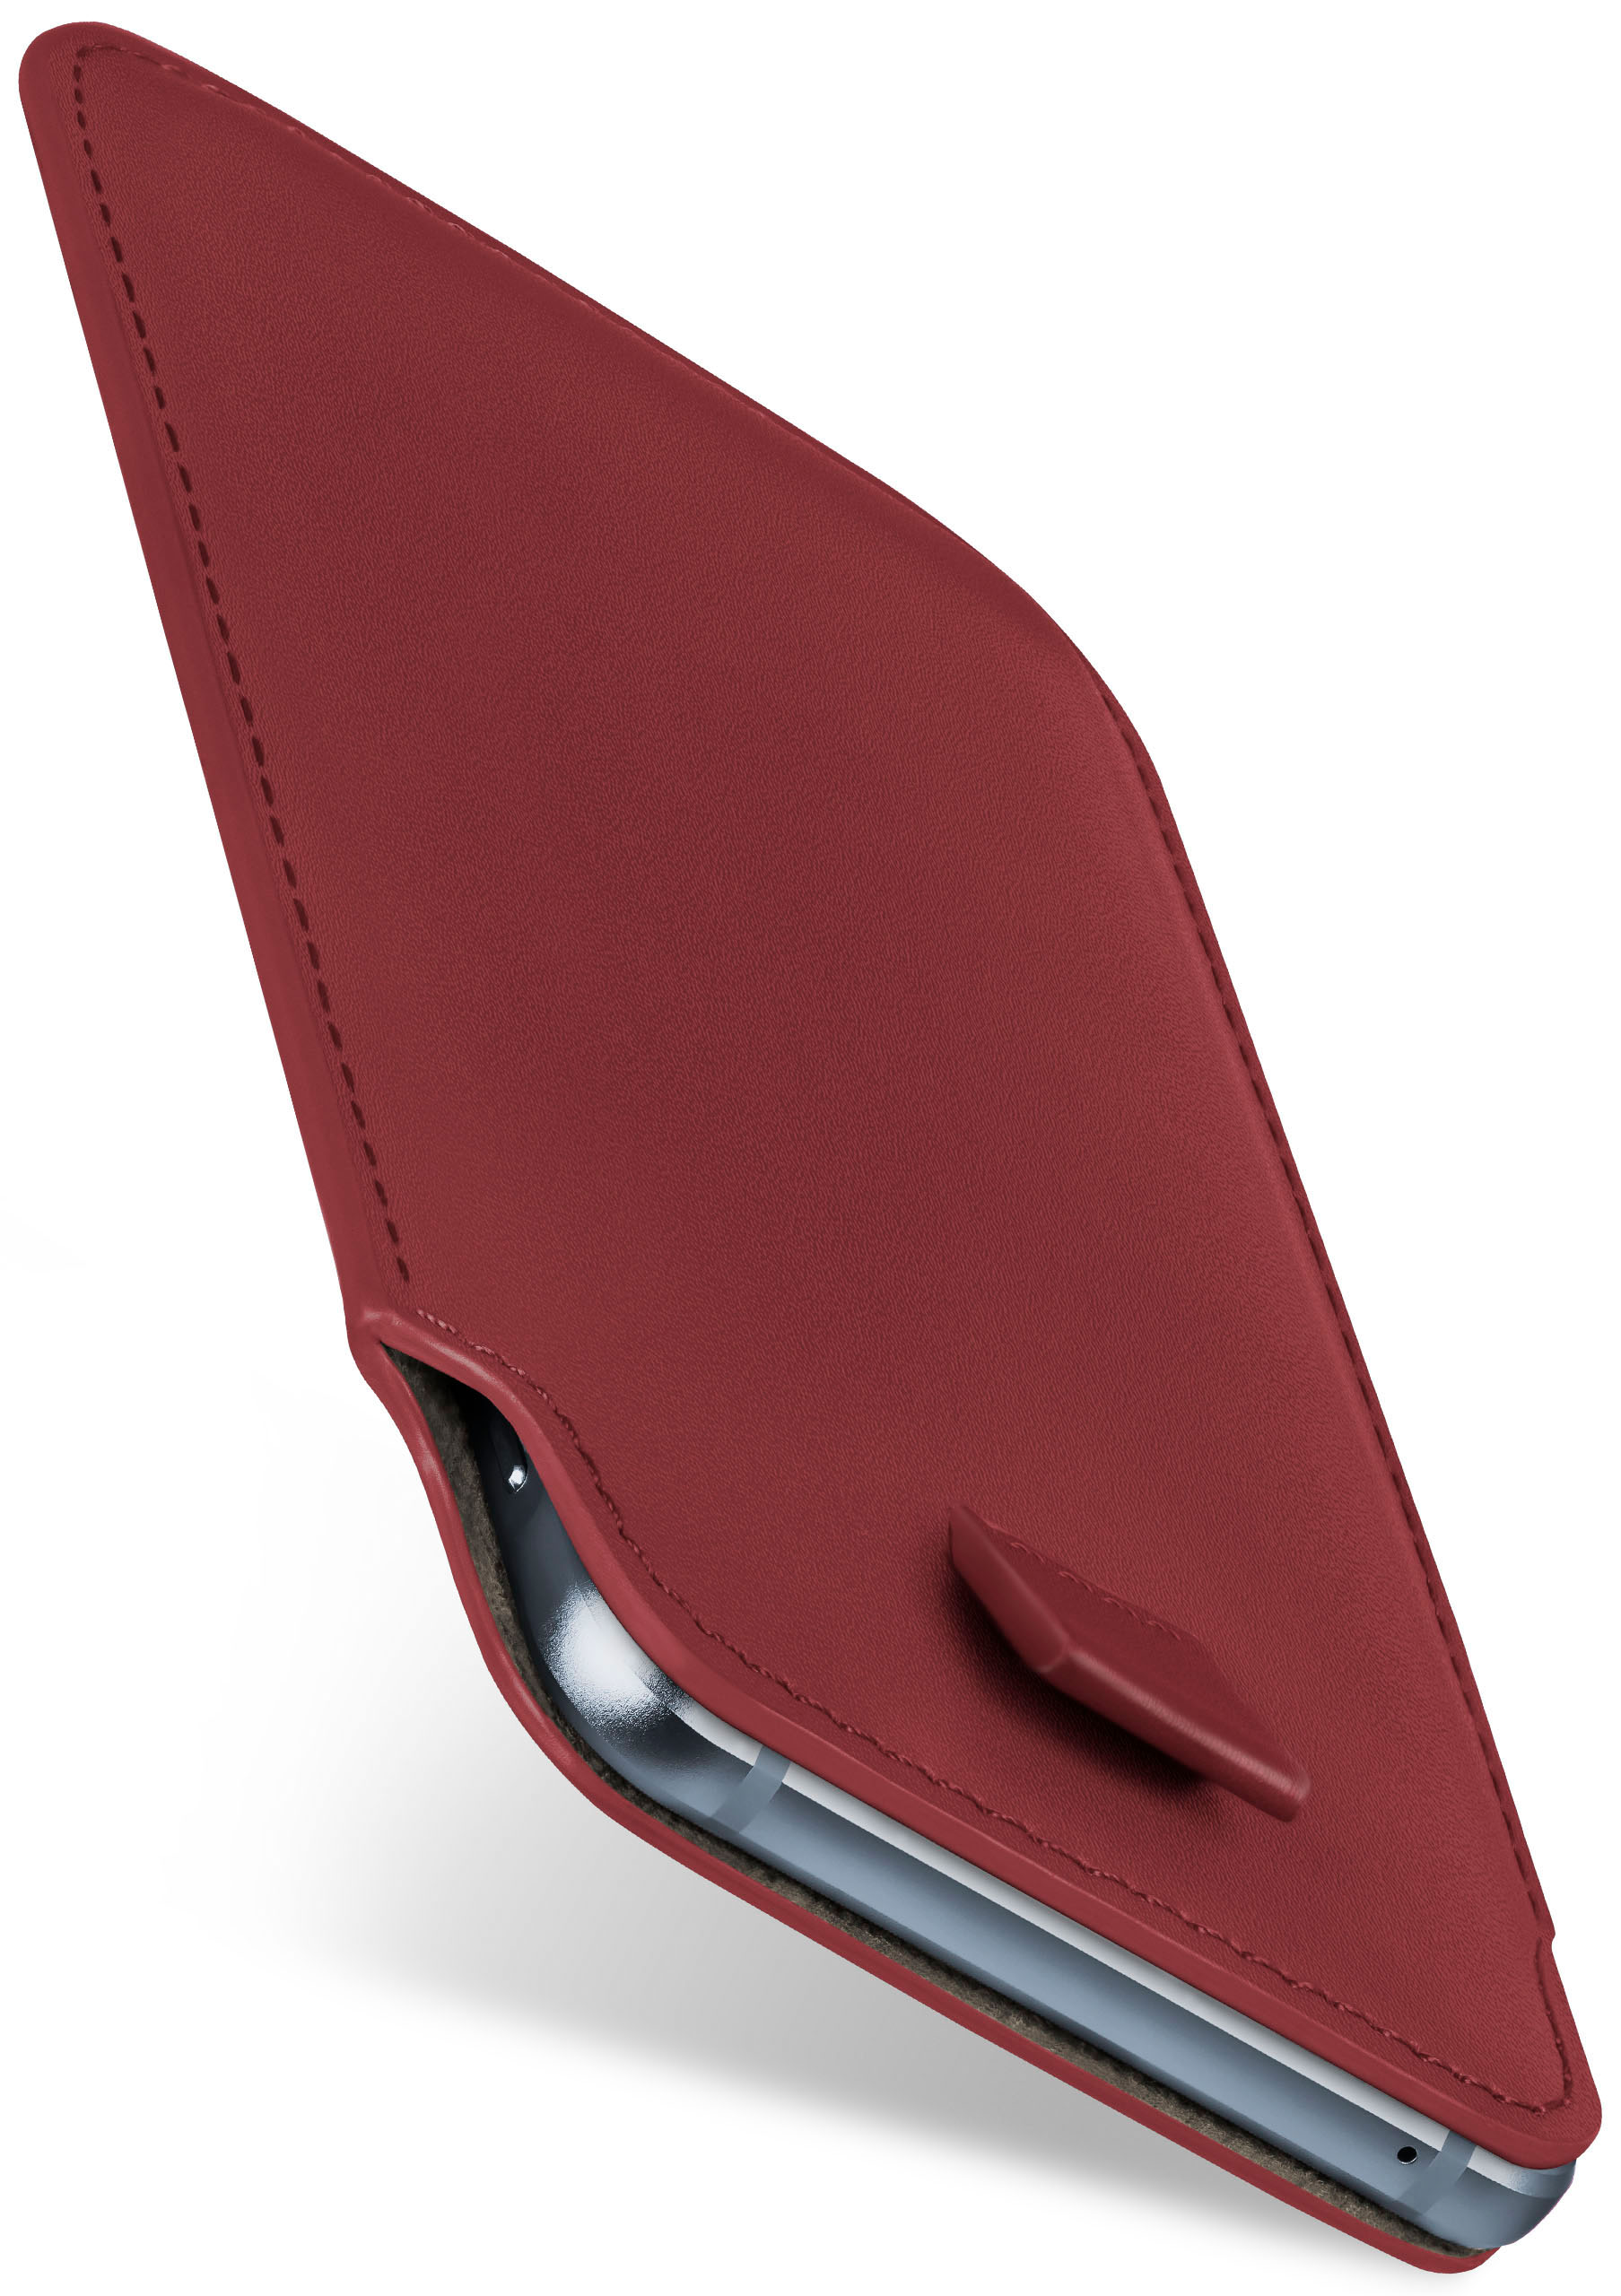 MOEX Slide Case, G8 Moto Cover, Motorola, Maroon-Red Power, Full